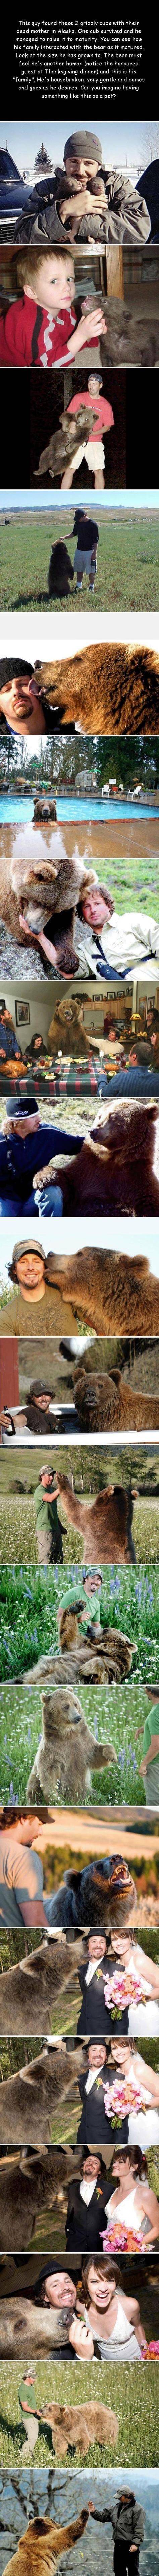 Thanks Pinterest. Now I want a bear.